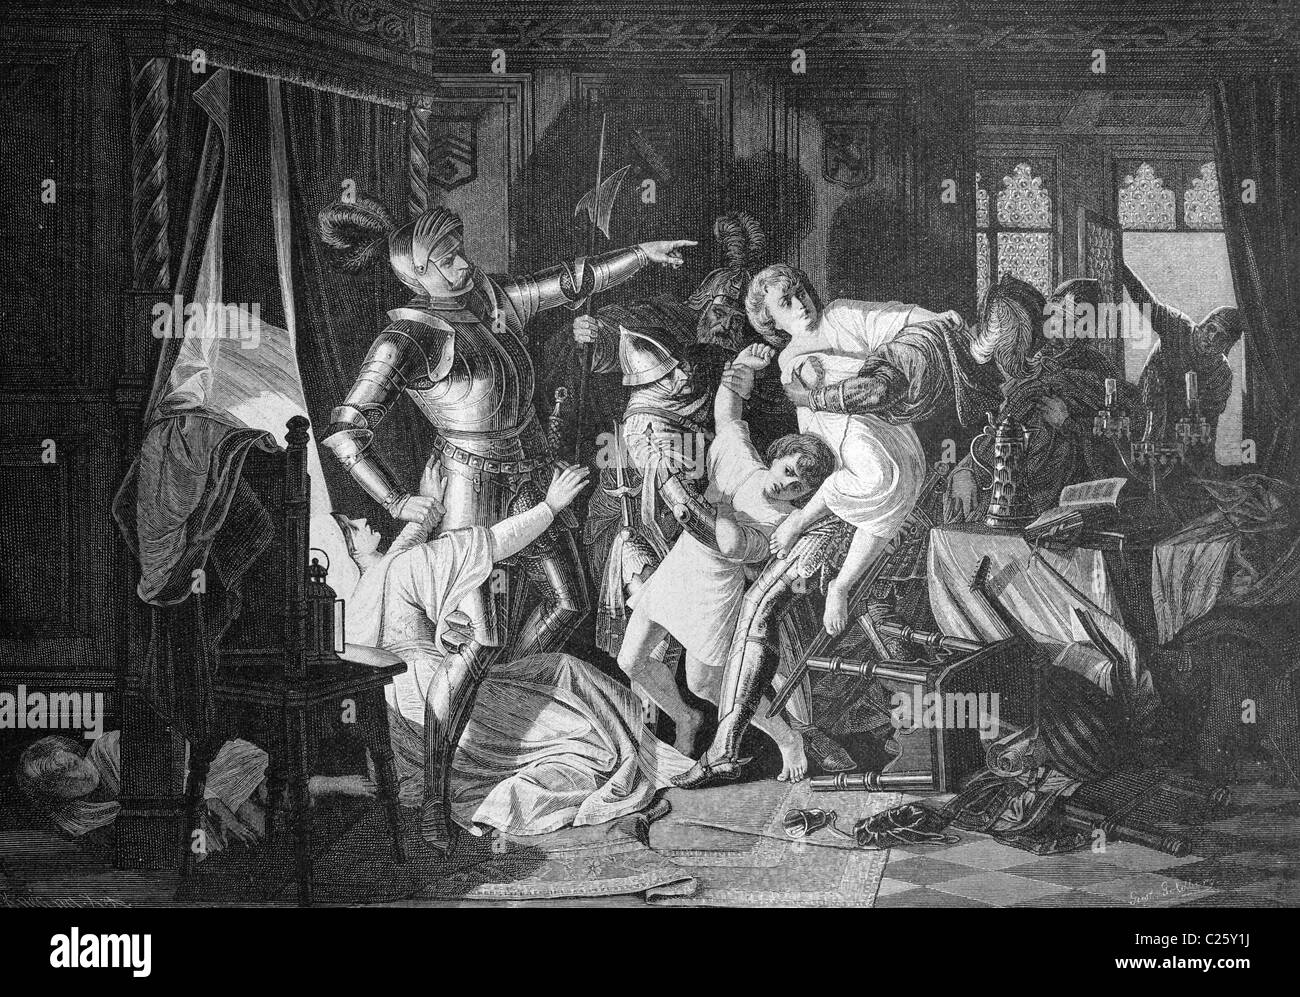 Altenburger Sächsischer Prinzenraub Prinzenraub, auch, 1455, el secuestro de los príncipes de Sajonia, ilustración histórica circa 1893 Foto de stock